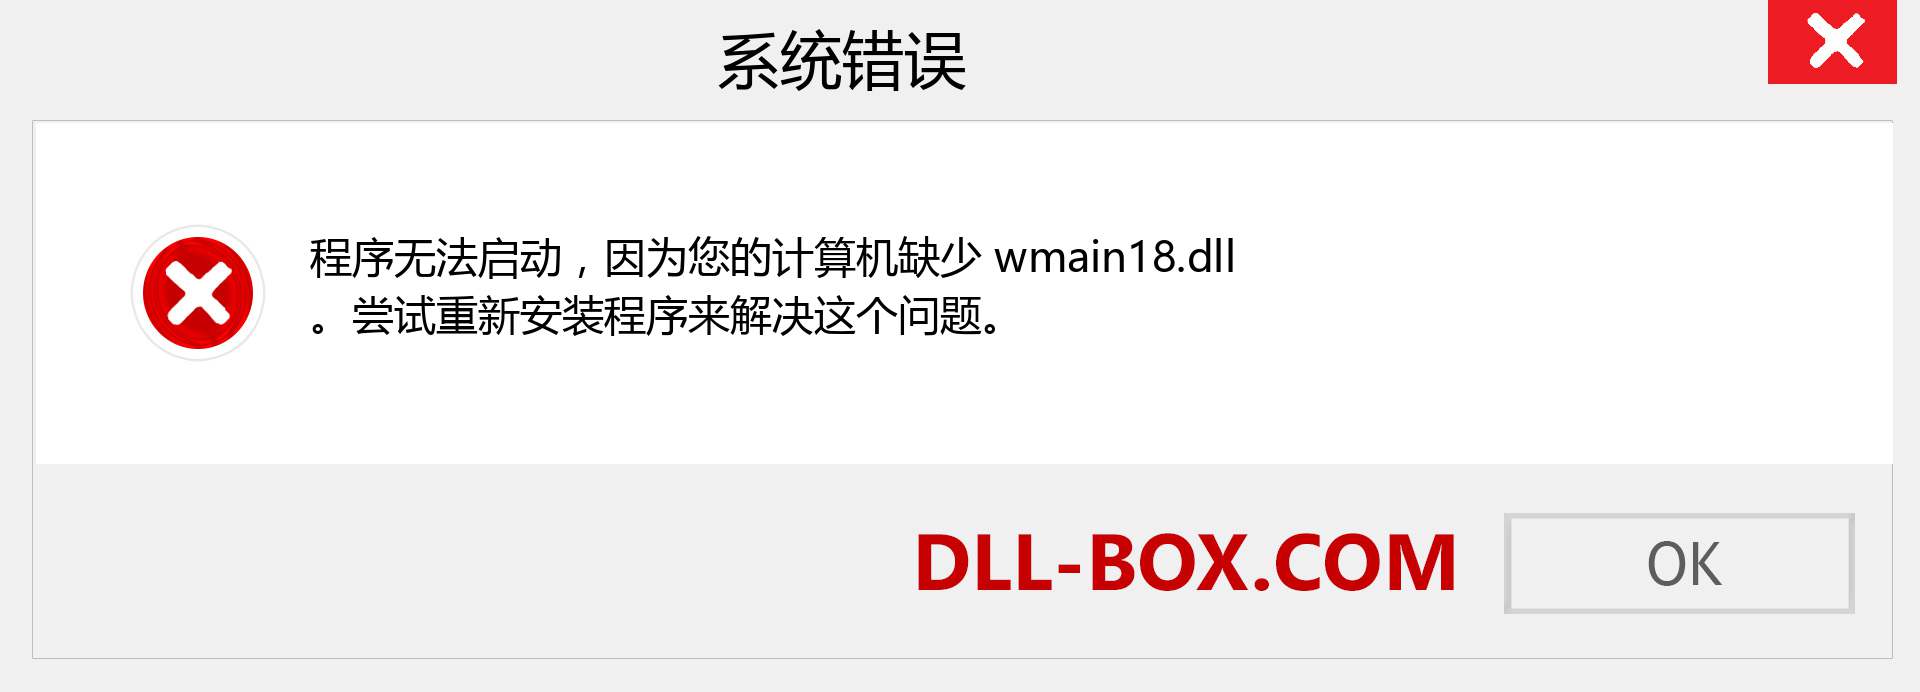 wmain18.dll 文件丢失？。 适用于 Windows 7、8、10 的下载 - 修复 Windows、照片、图像上的 wmain18 dll 丢失错误